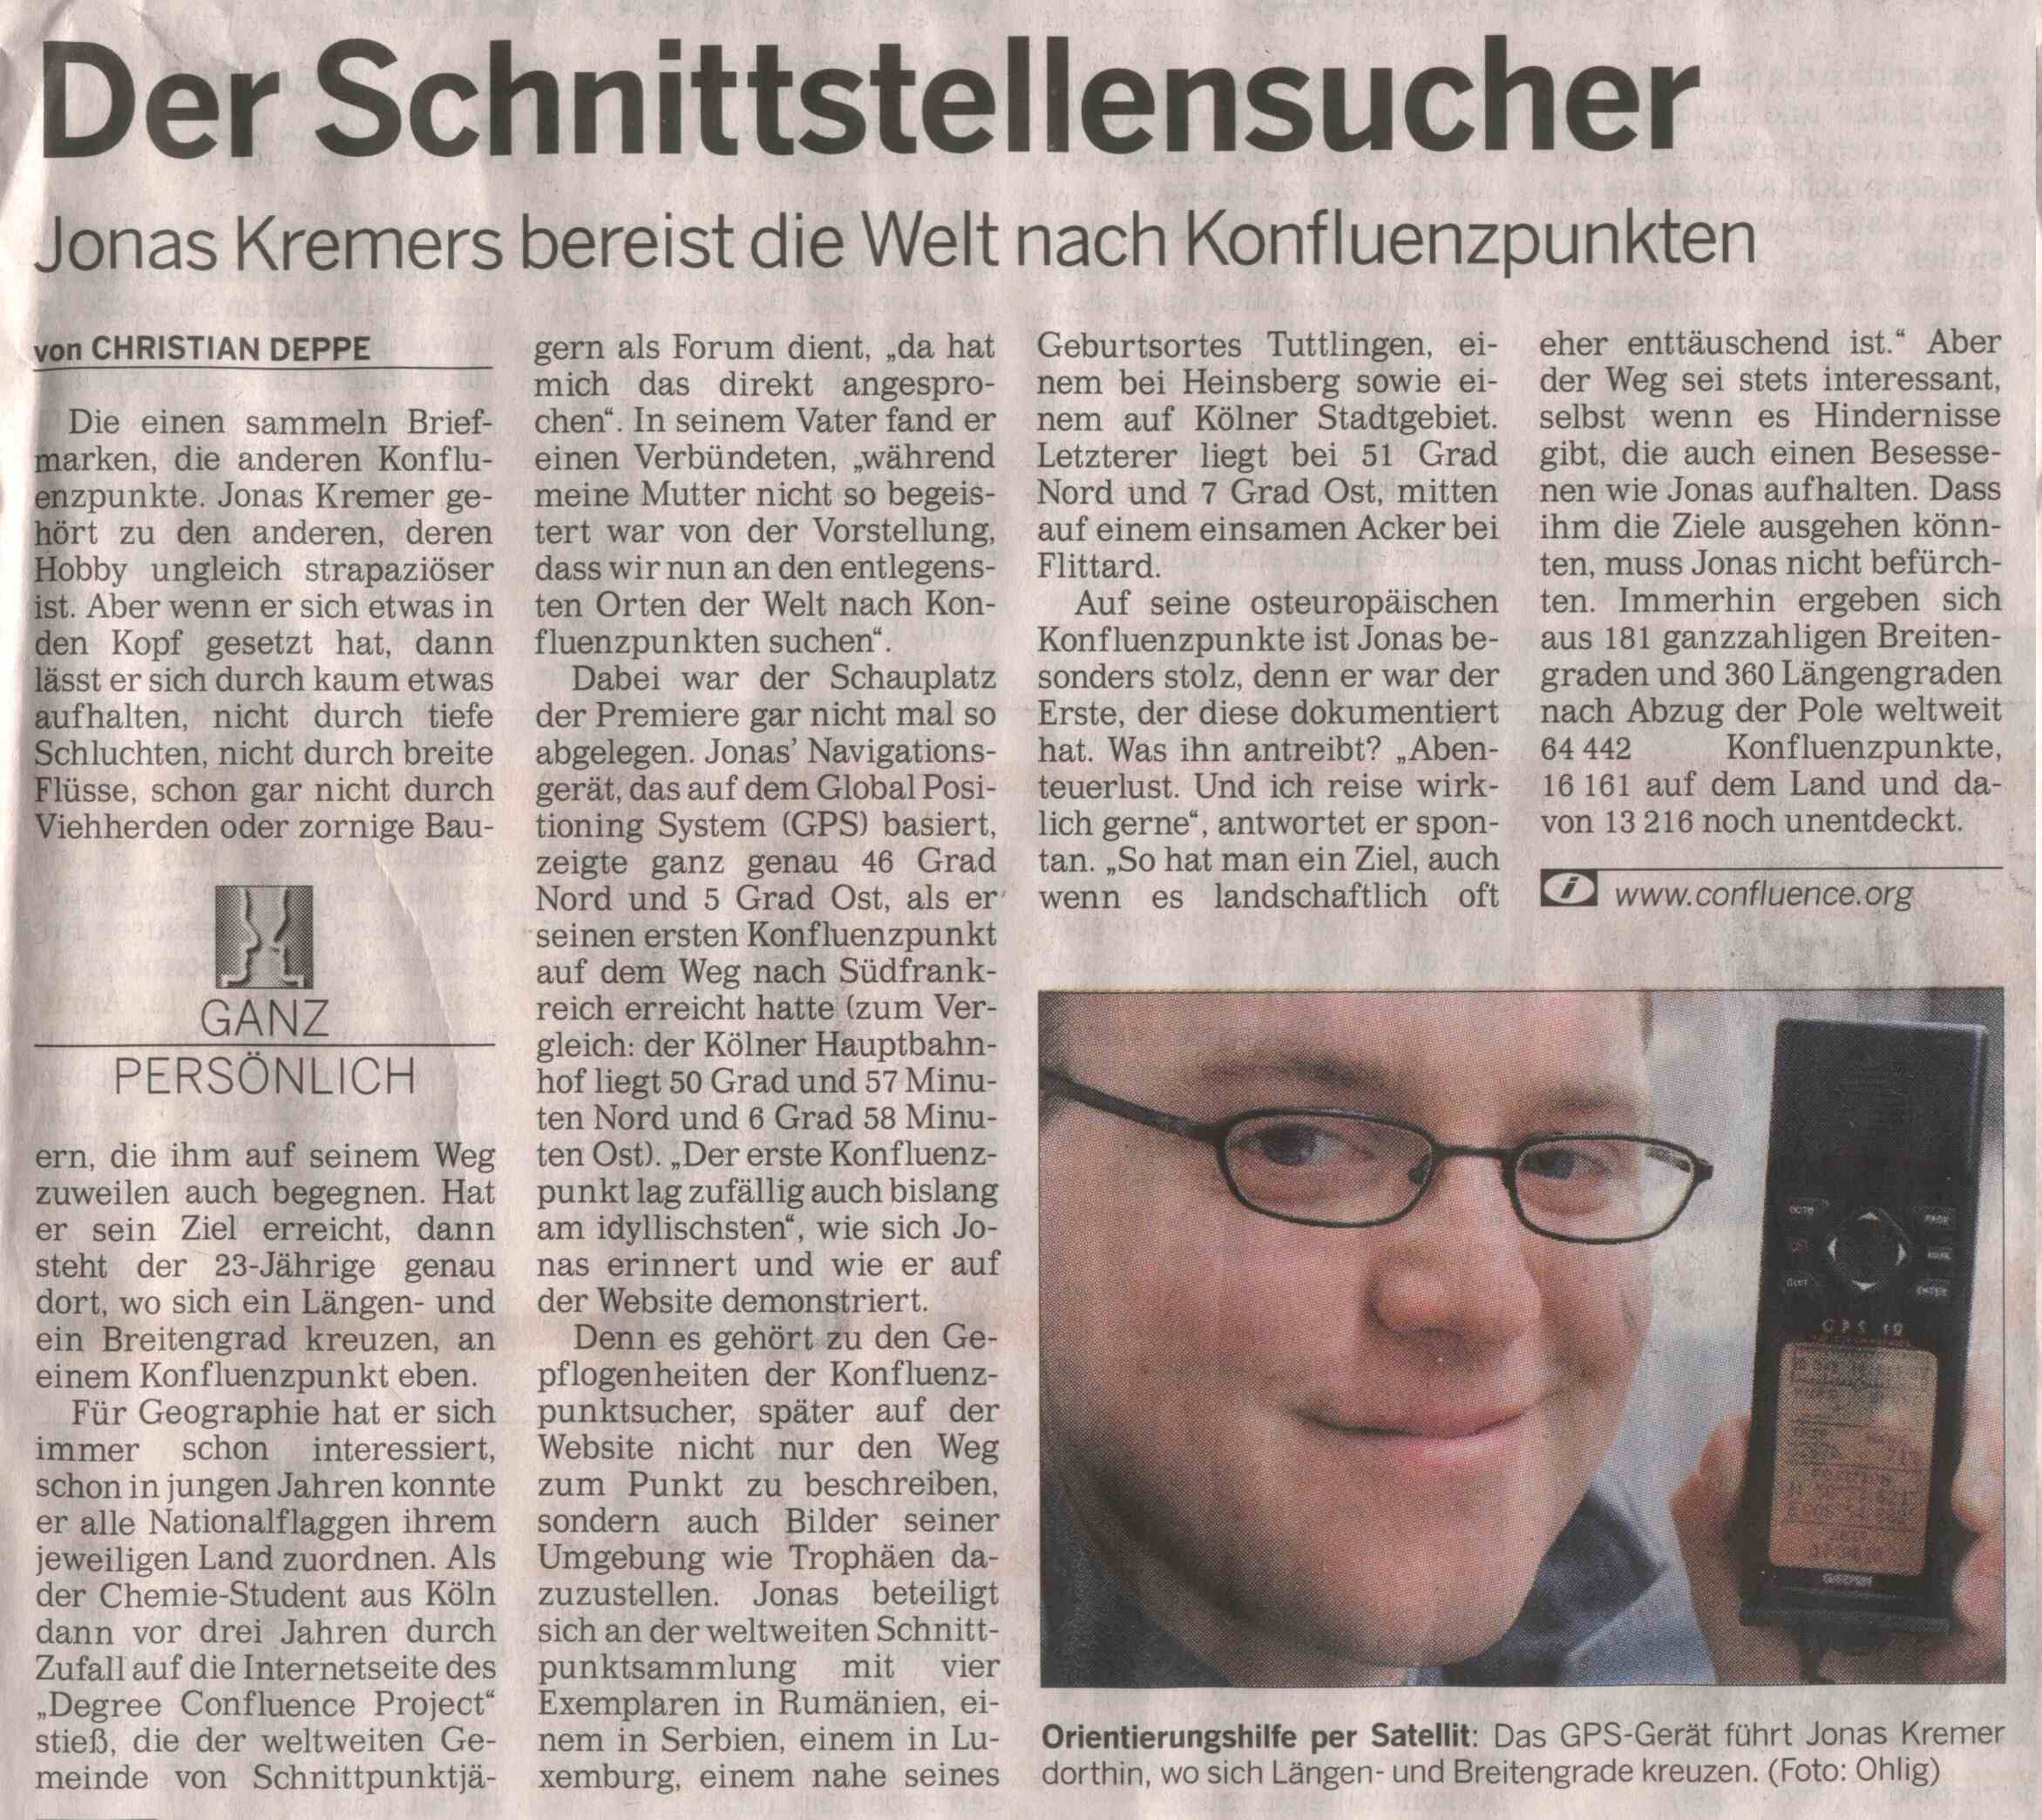 K�lnische Rundschau article